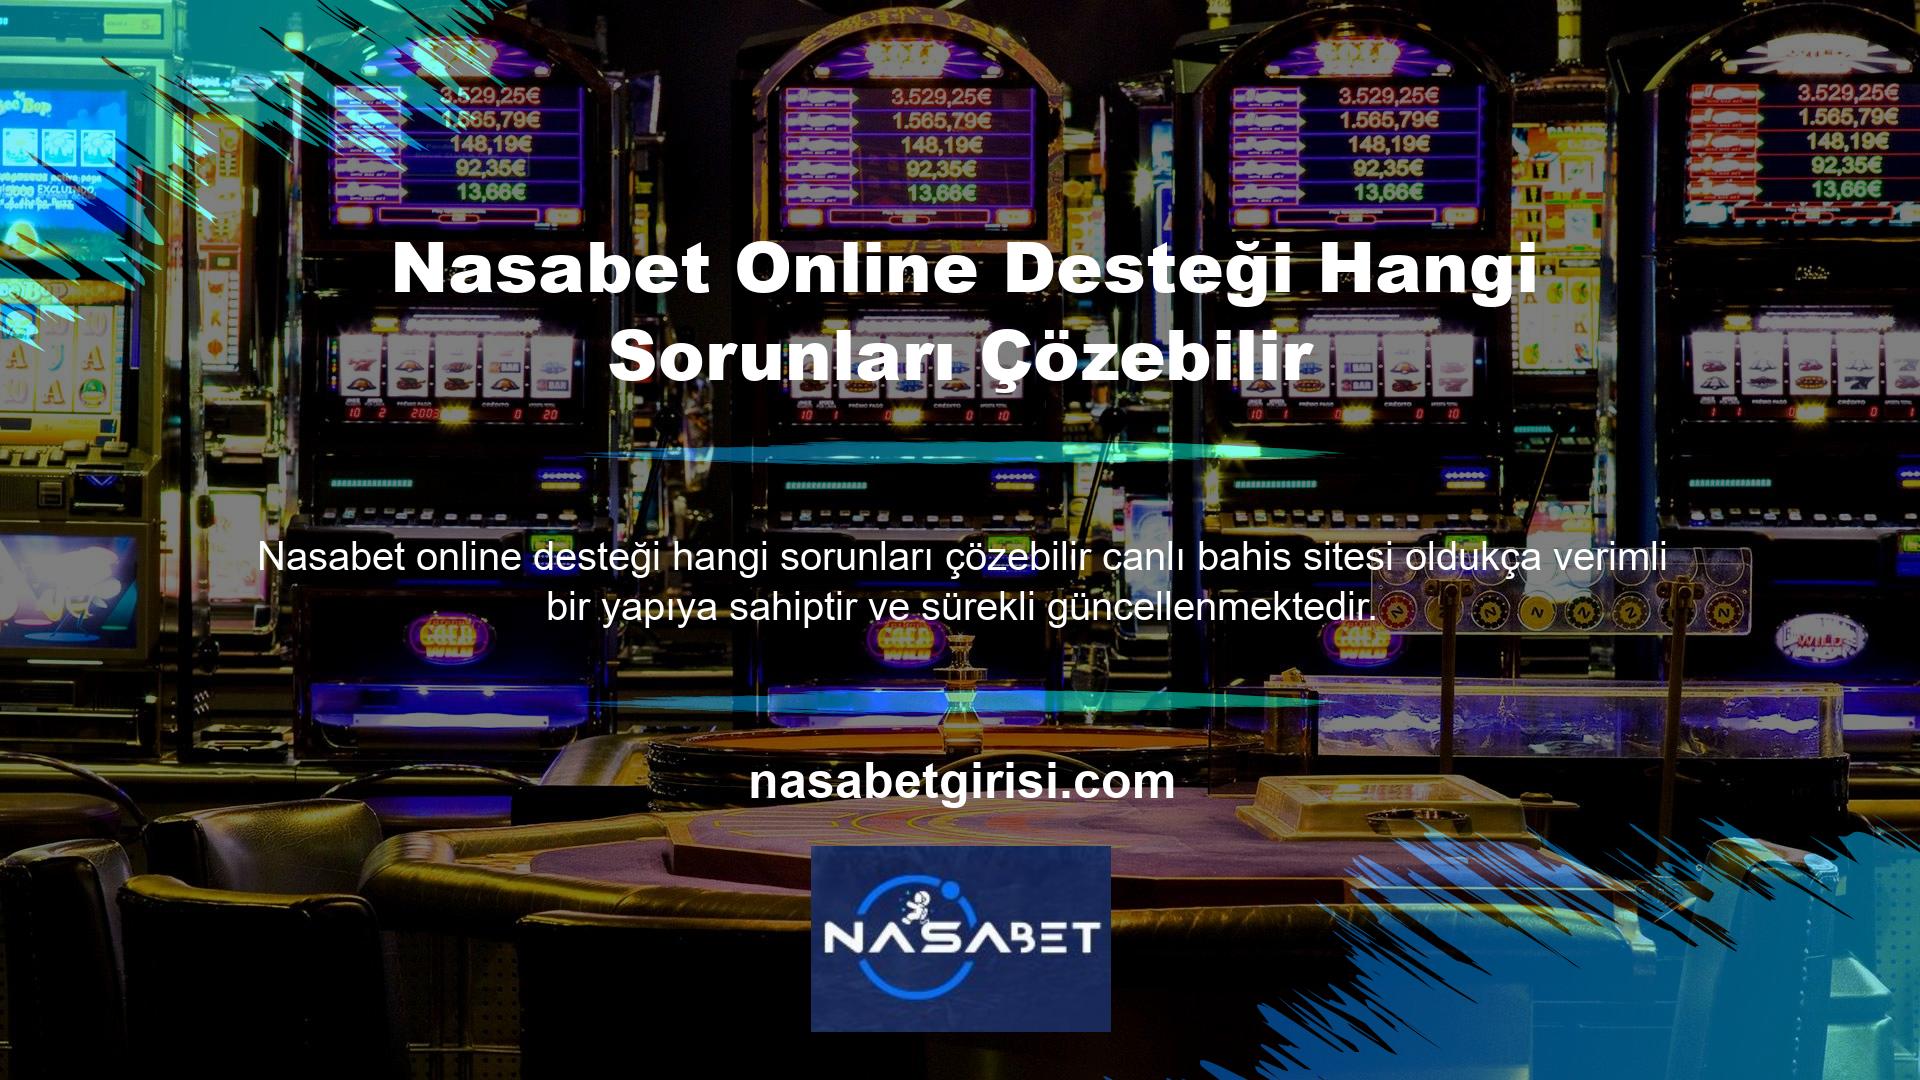 Nasabet online desteği ile bonuslar, oyun oranları, casino ve canlı casino gibi çeşitli alanlarda ihtiyacınız olan bilgilere ulaşabilirsiniz